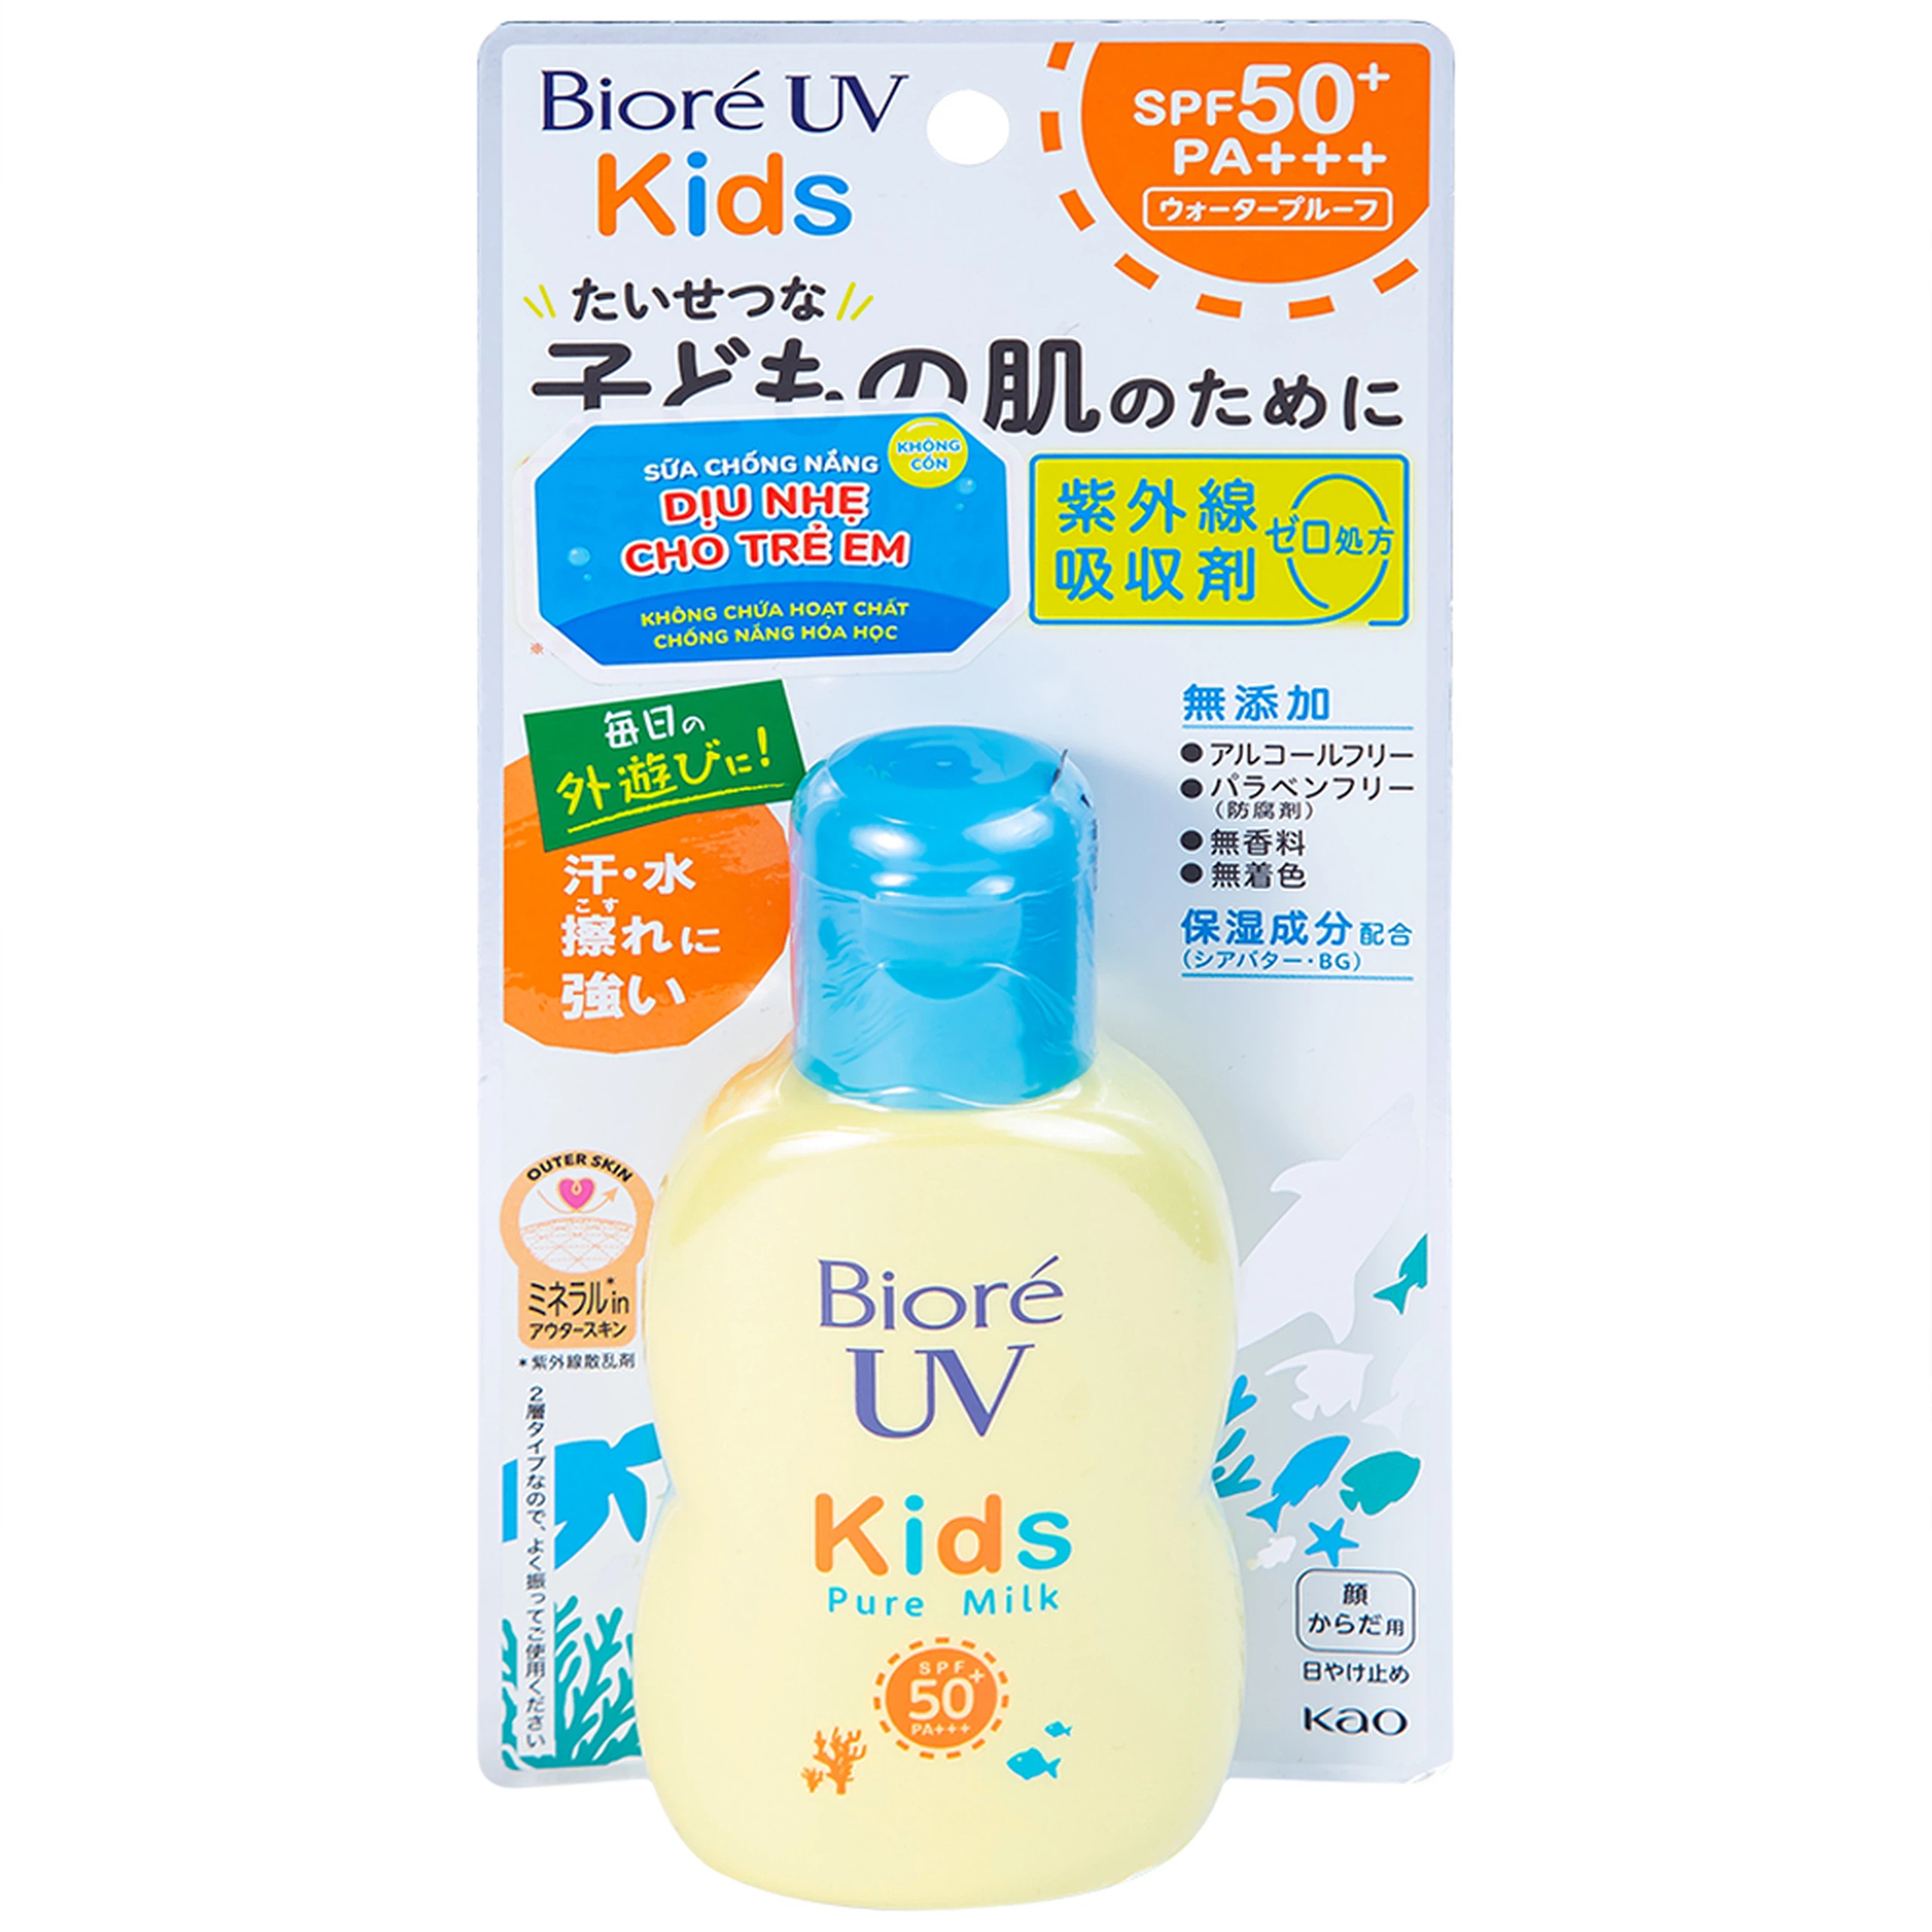 Sữa chống nắng Bioré UV Kids Pure Milk SPF50+ PA+++ dịu nhẹ cho trẻ em (70ml)